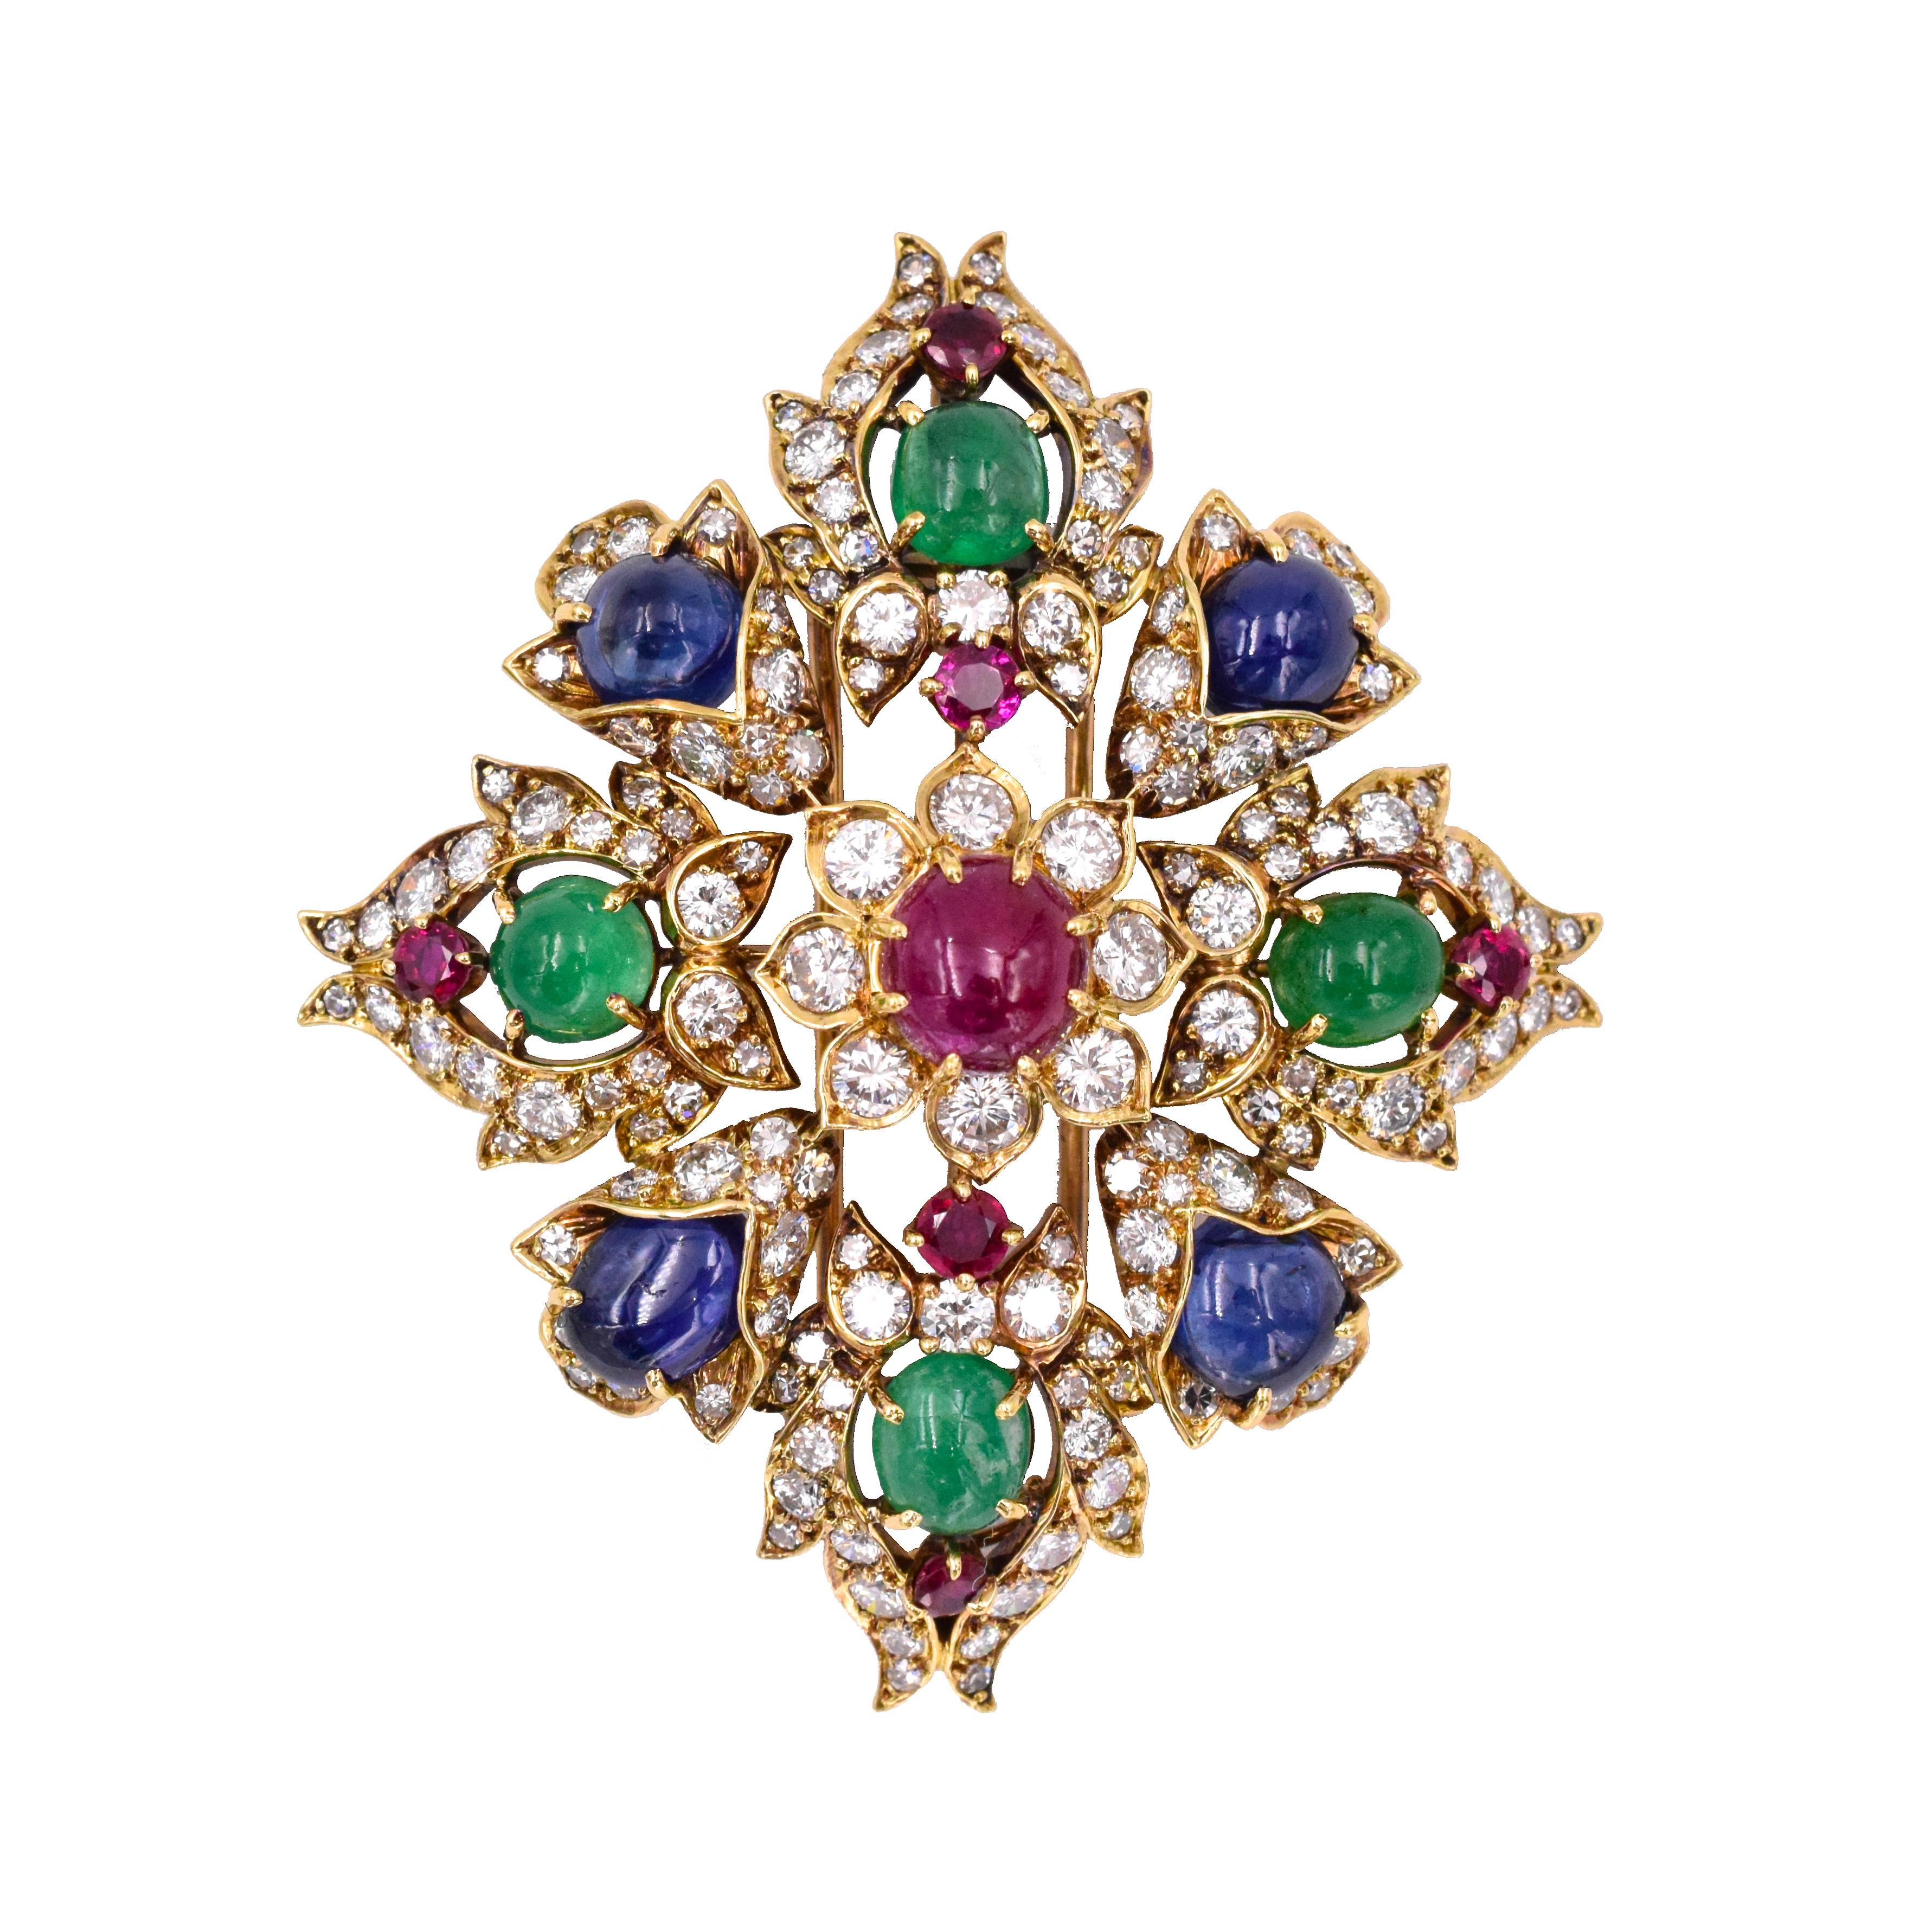 Vintage classique  Broche/pendentif Van Cleef & Arpels en diamant, rubis, saphir et émeraude. Spectaculaire broche colorée avec 3,32 carats de diamants, des rubis de 4,5 carats, des saphirs de 7,5 carats et des émeraudes de 4 carats.
or 18k